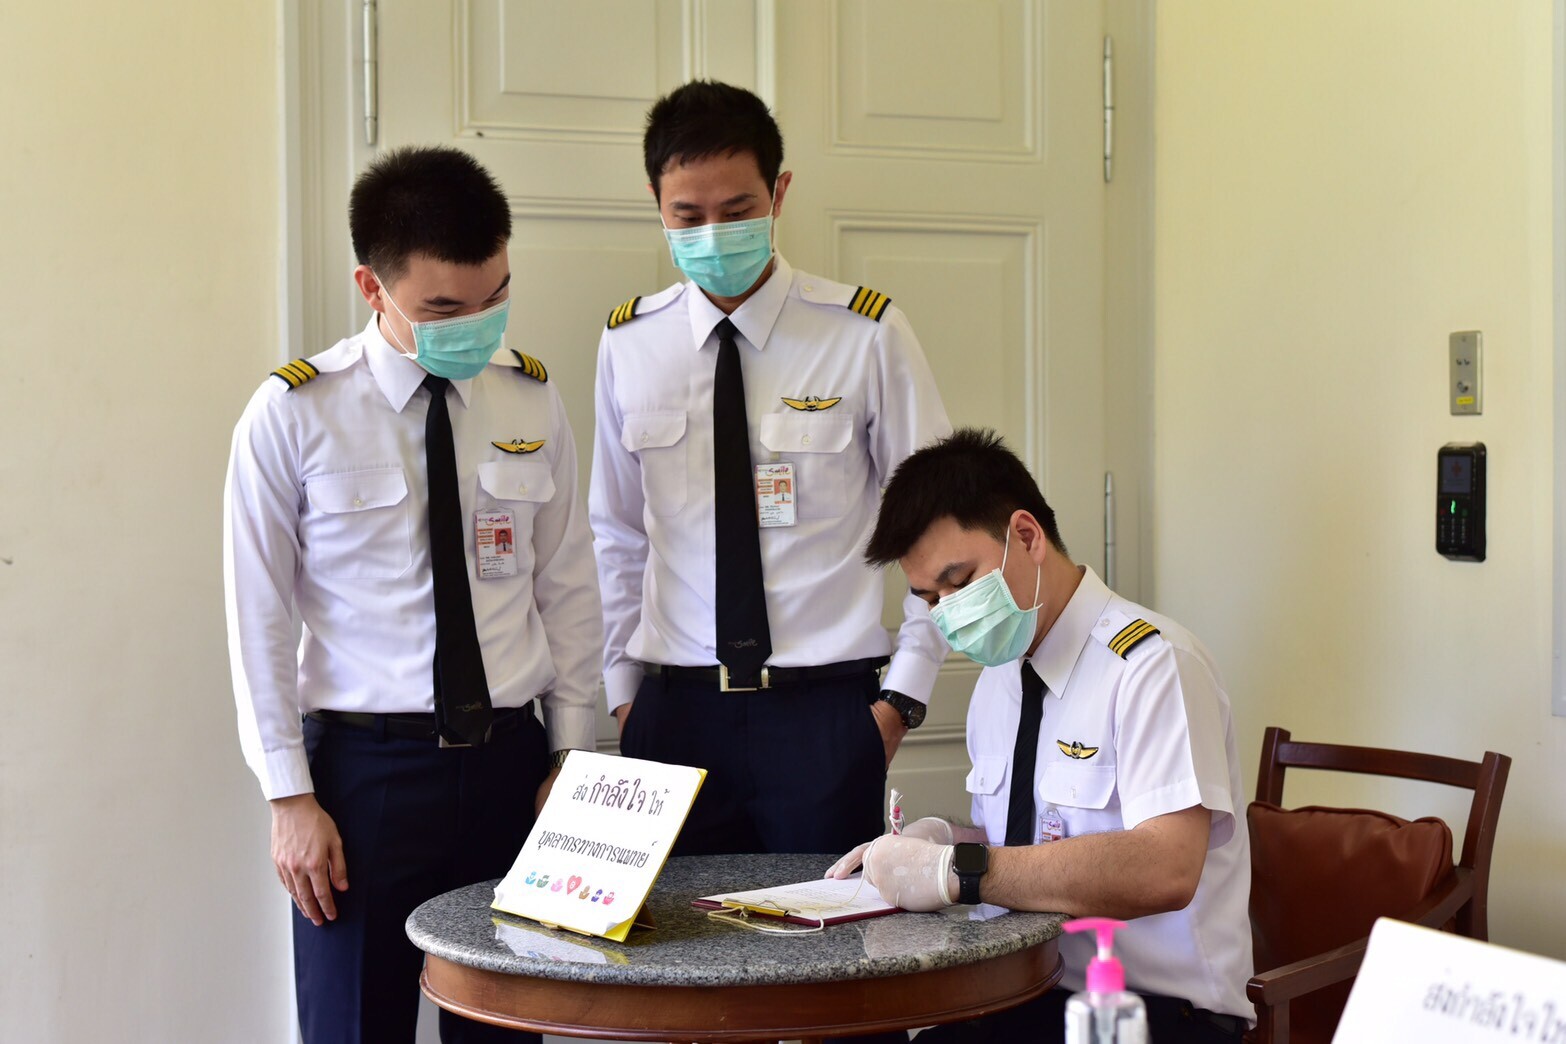 การบินไทยร่วมกับไทยสมายล์จัดโครงการ “ด้วยรักและรอยยิ้ม” ส่งพลังใจให้กับทีมแพทย์ไทยสู้วิกฤตโควิด-19